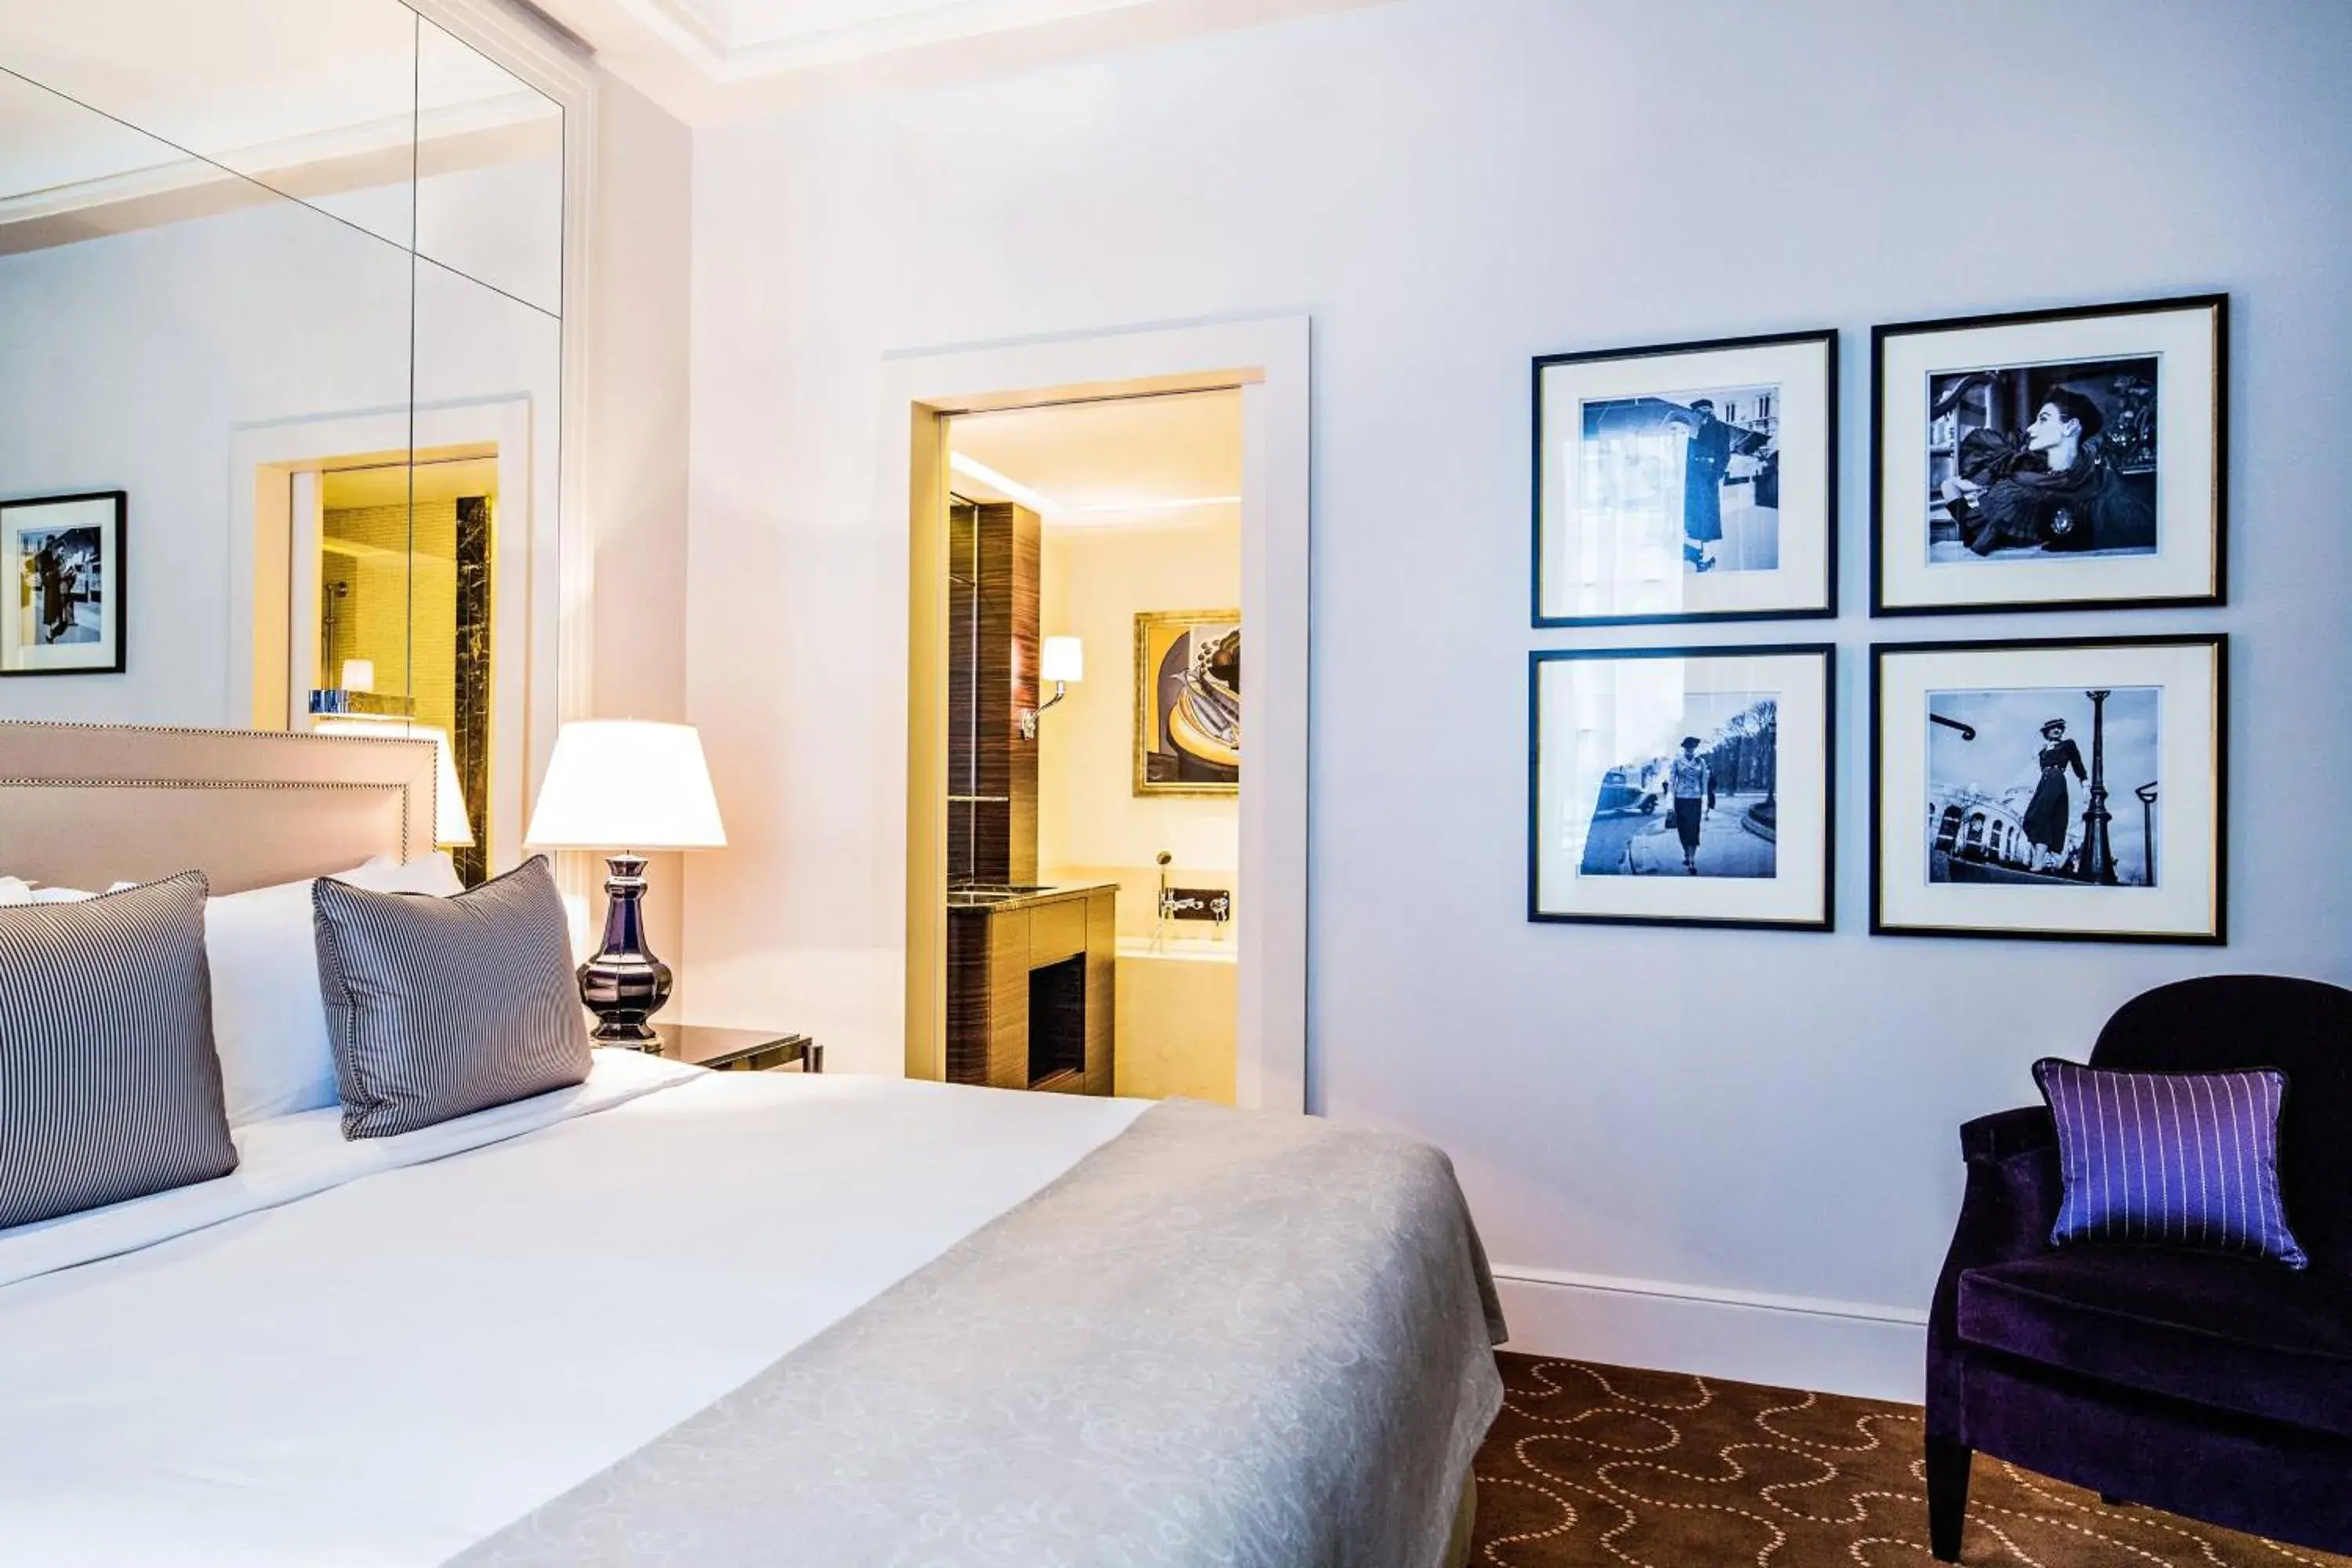 Bedroom, Bed in Prince de Galles, a Luxury Collection hotel, Paris